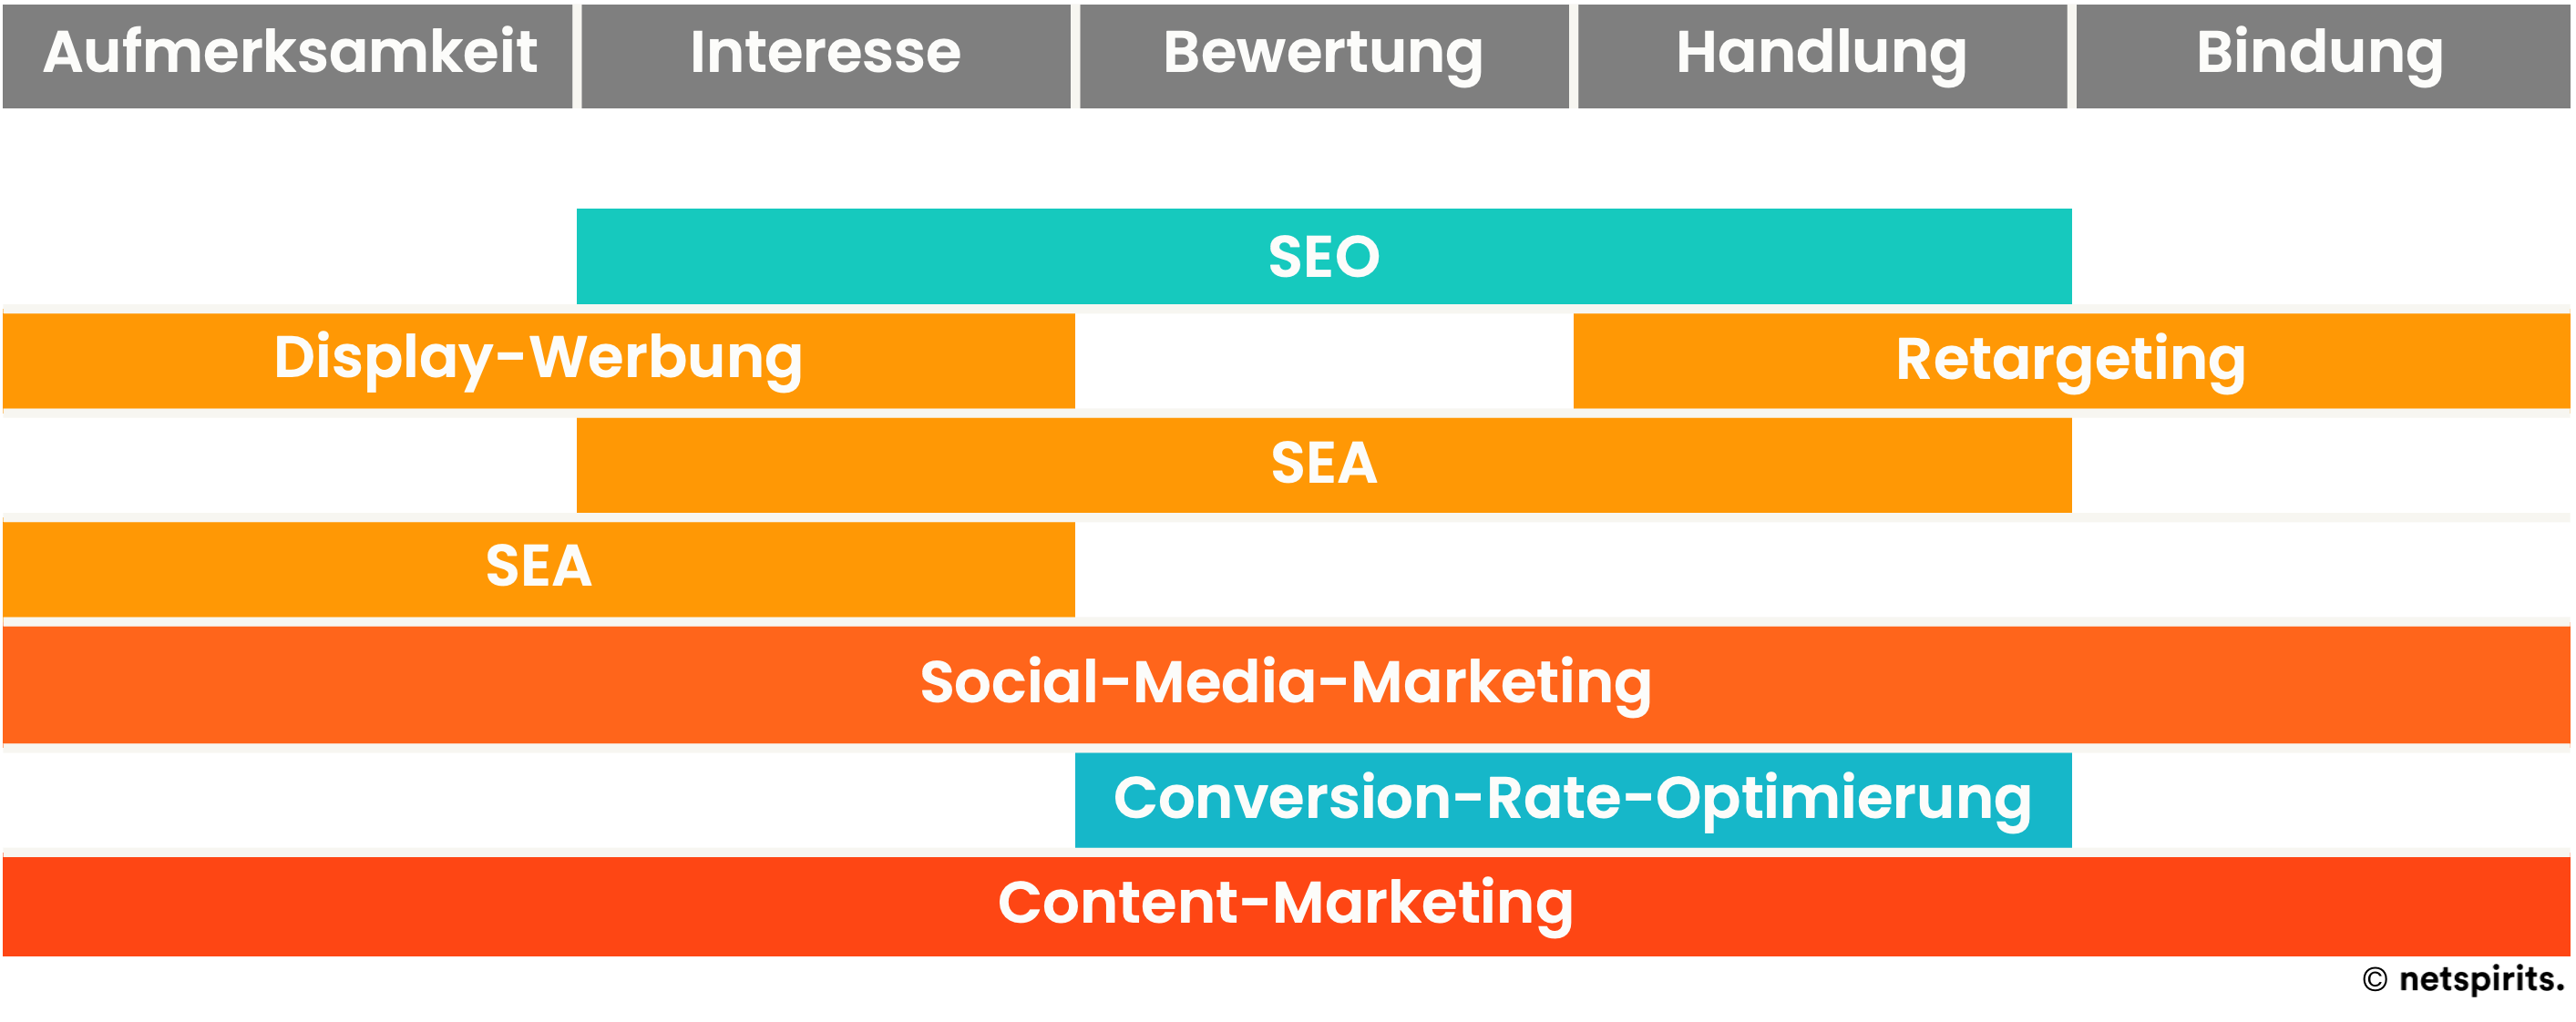 Nutze die Synergieeffekte zwischen Content-Marketing und SEO-Maßnahmen